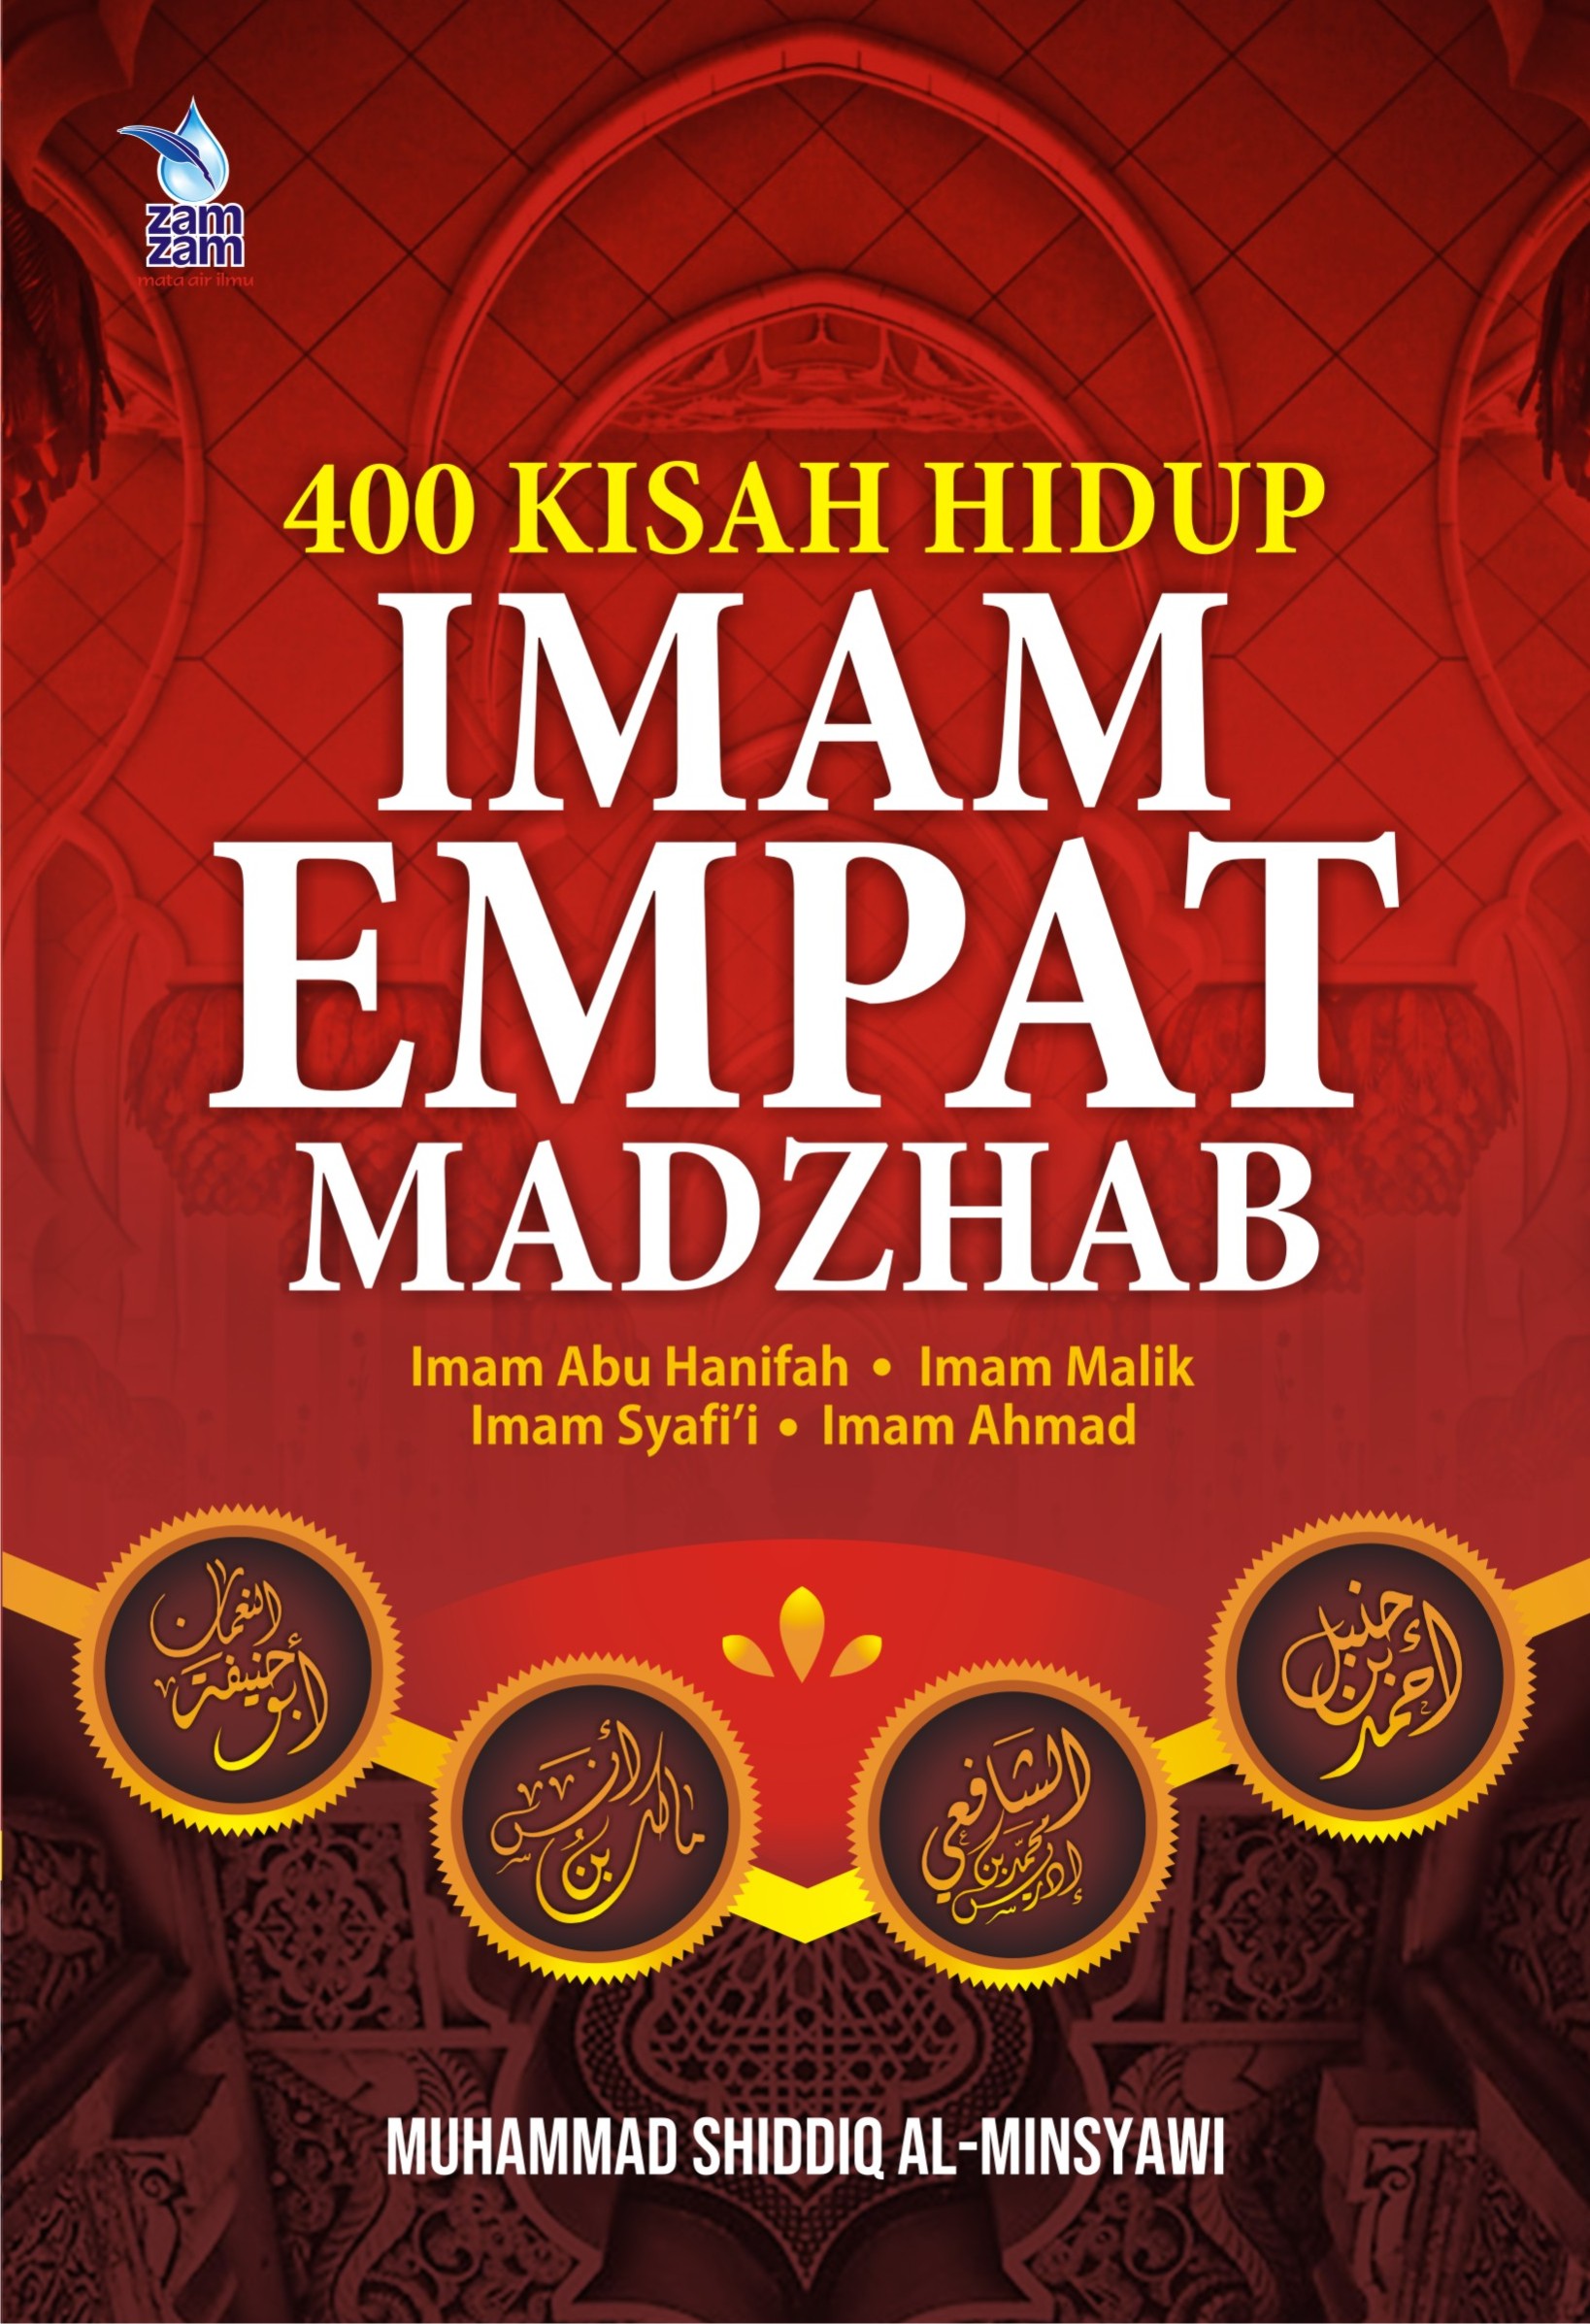 400 Kisah Hidup Imam Empat Madzhab